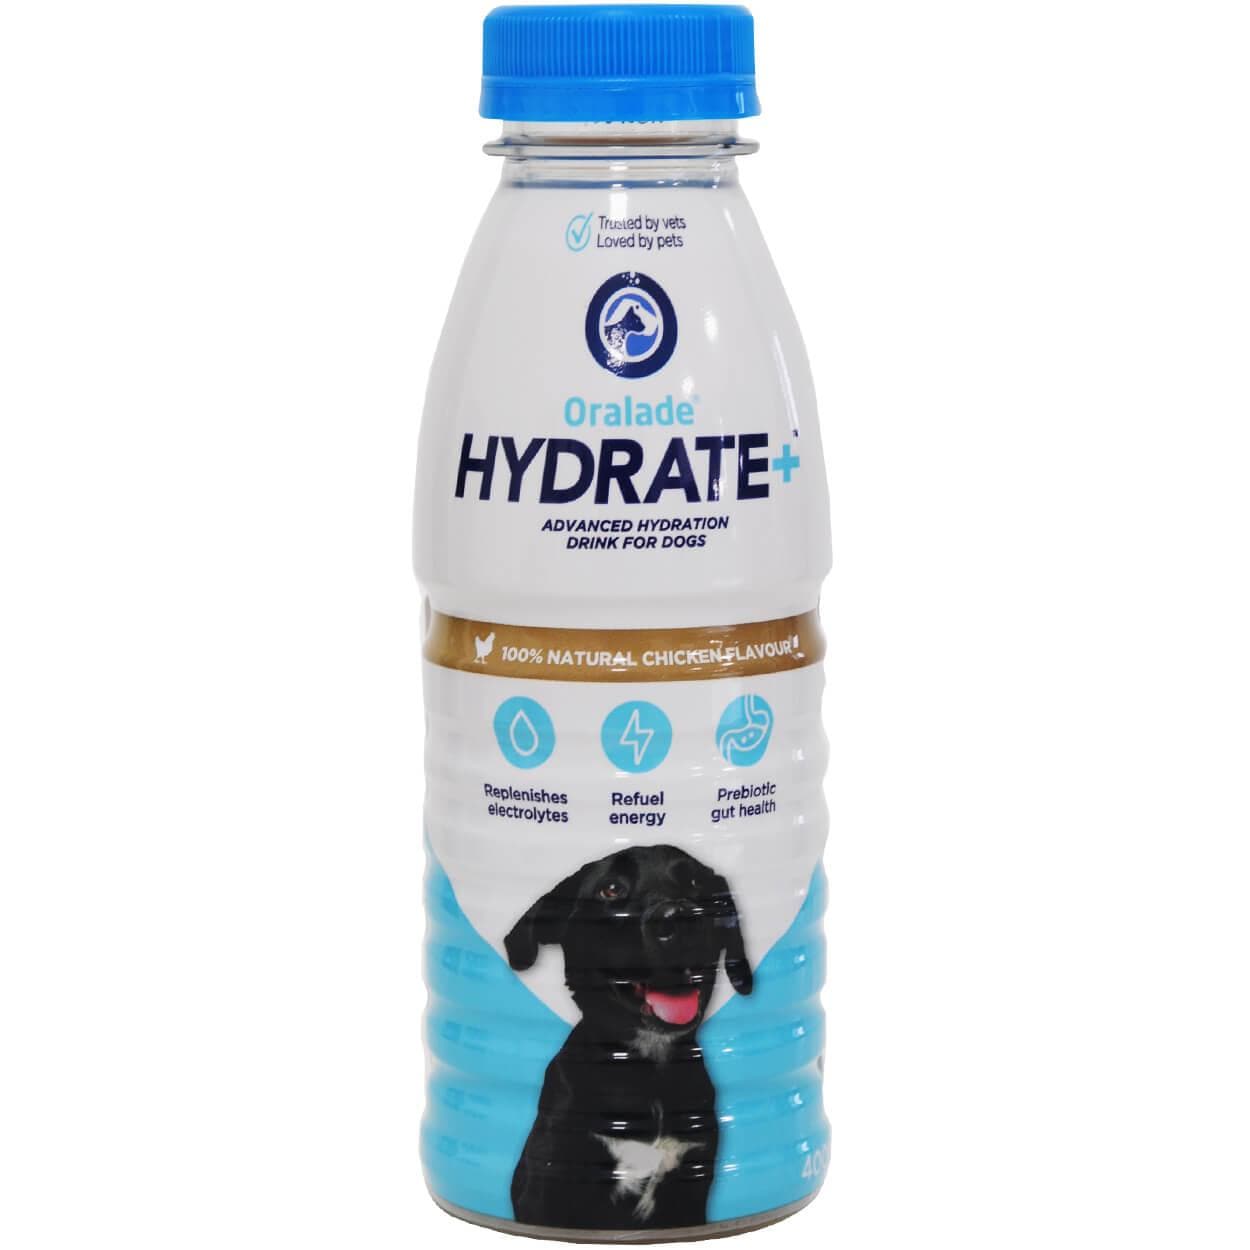 Oralade Hydrate + für Hunde - Macahl Animal Health - Alter:Adult, Alter:Senior, Darreichungsform:Flüssigkeit, Ergänzungsfuttermittel:Erholung, Tierart:Hund - Marigin AG Onlineshop für Tierbedarf